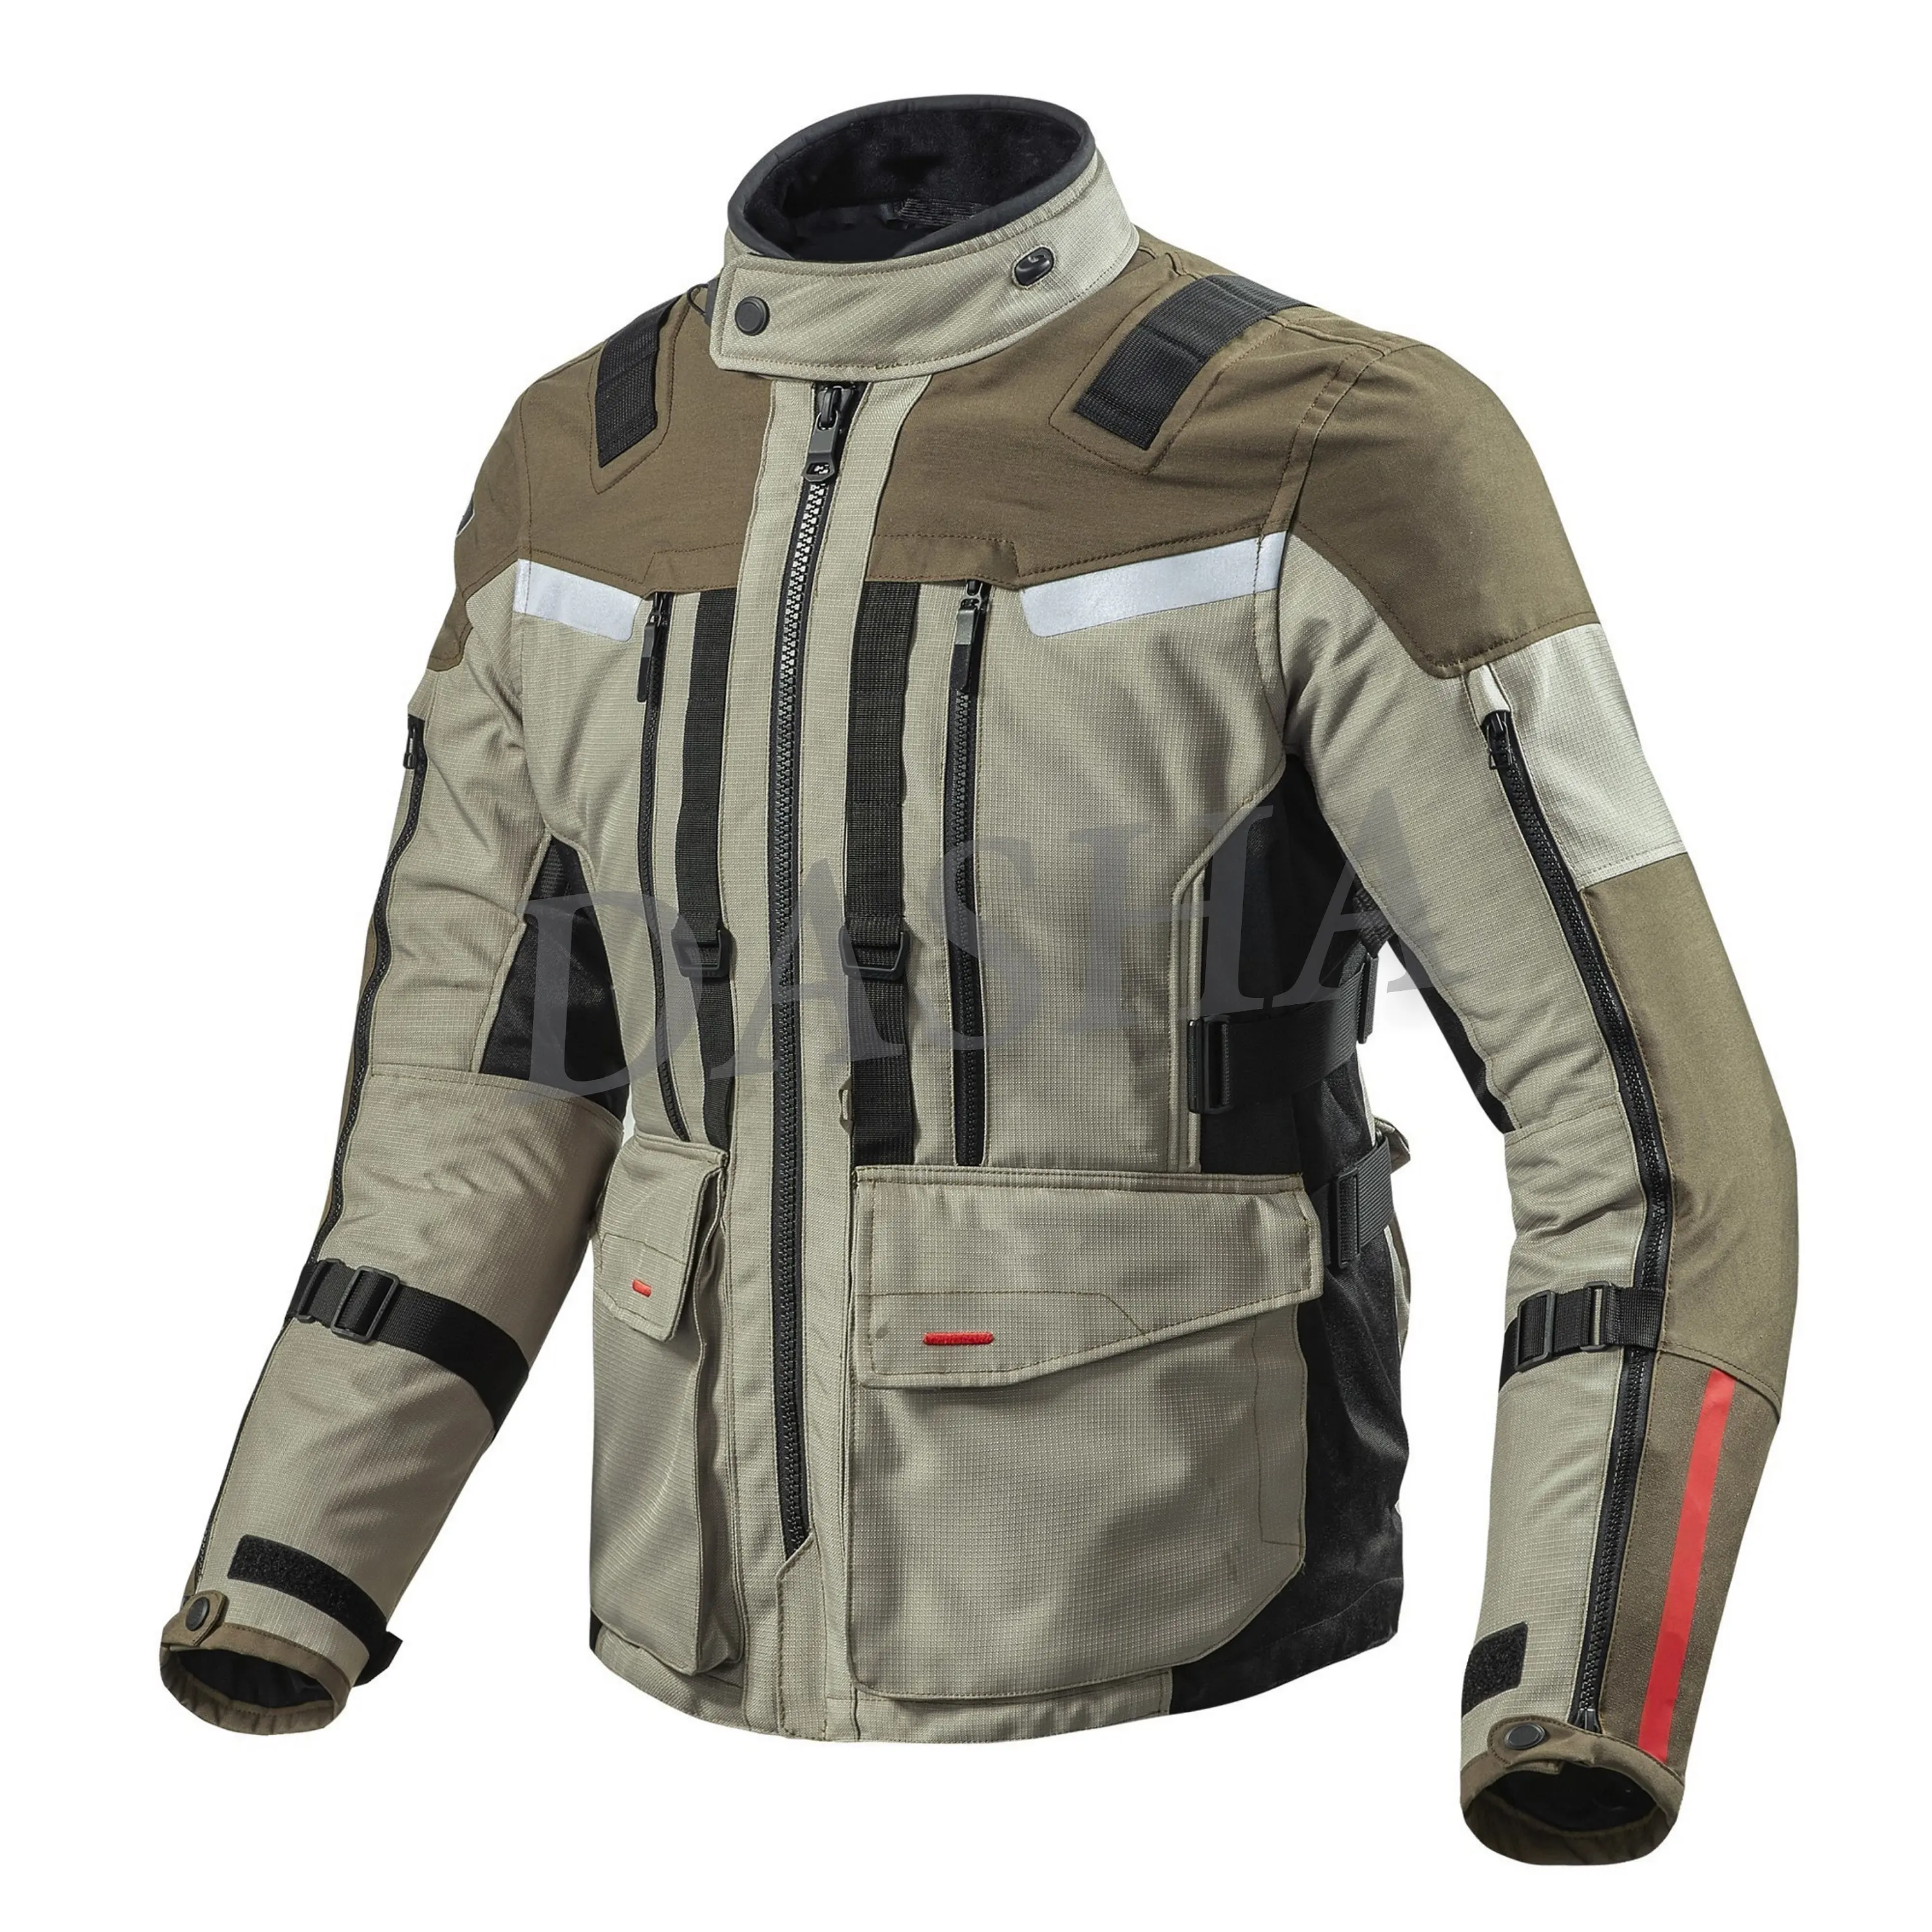 Veste en Textile étanche pour motocyclistes, Cordura moxy III 600D, de haute qualité,